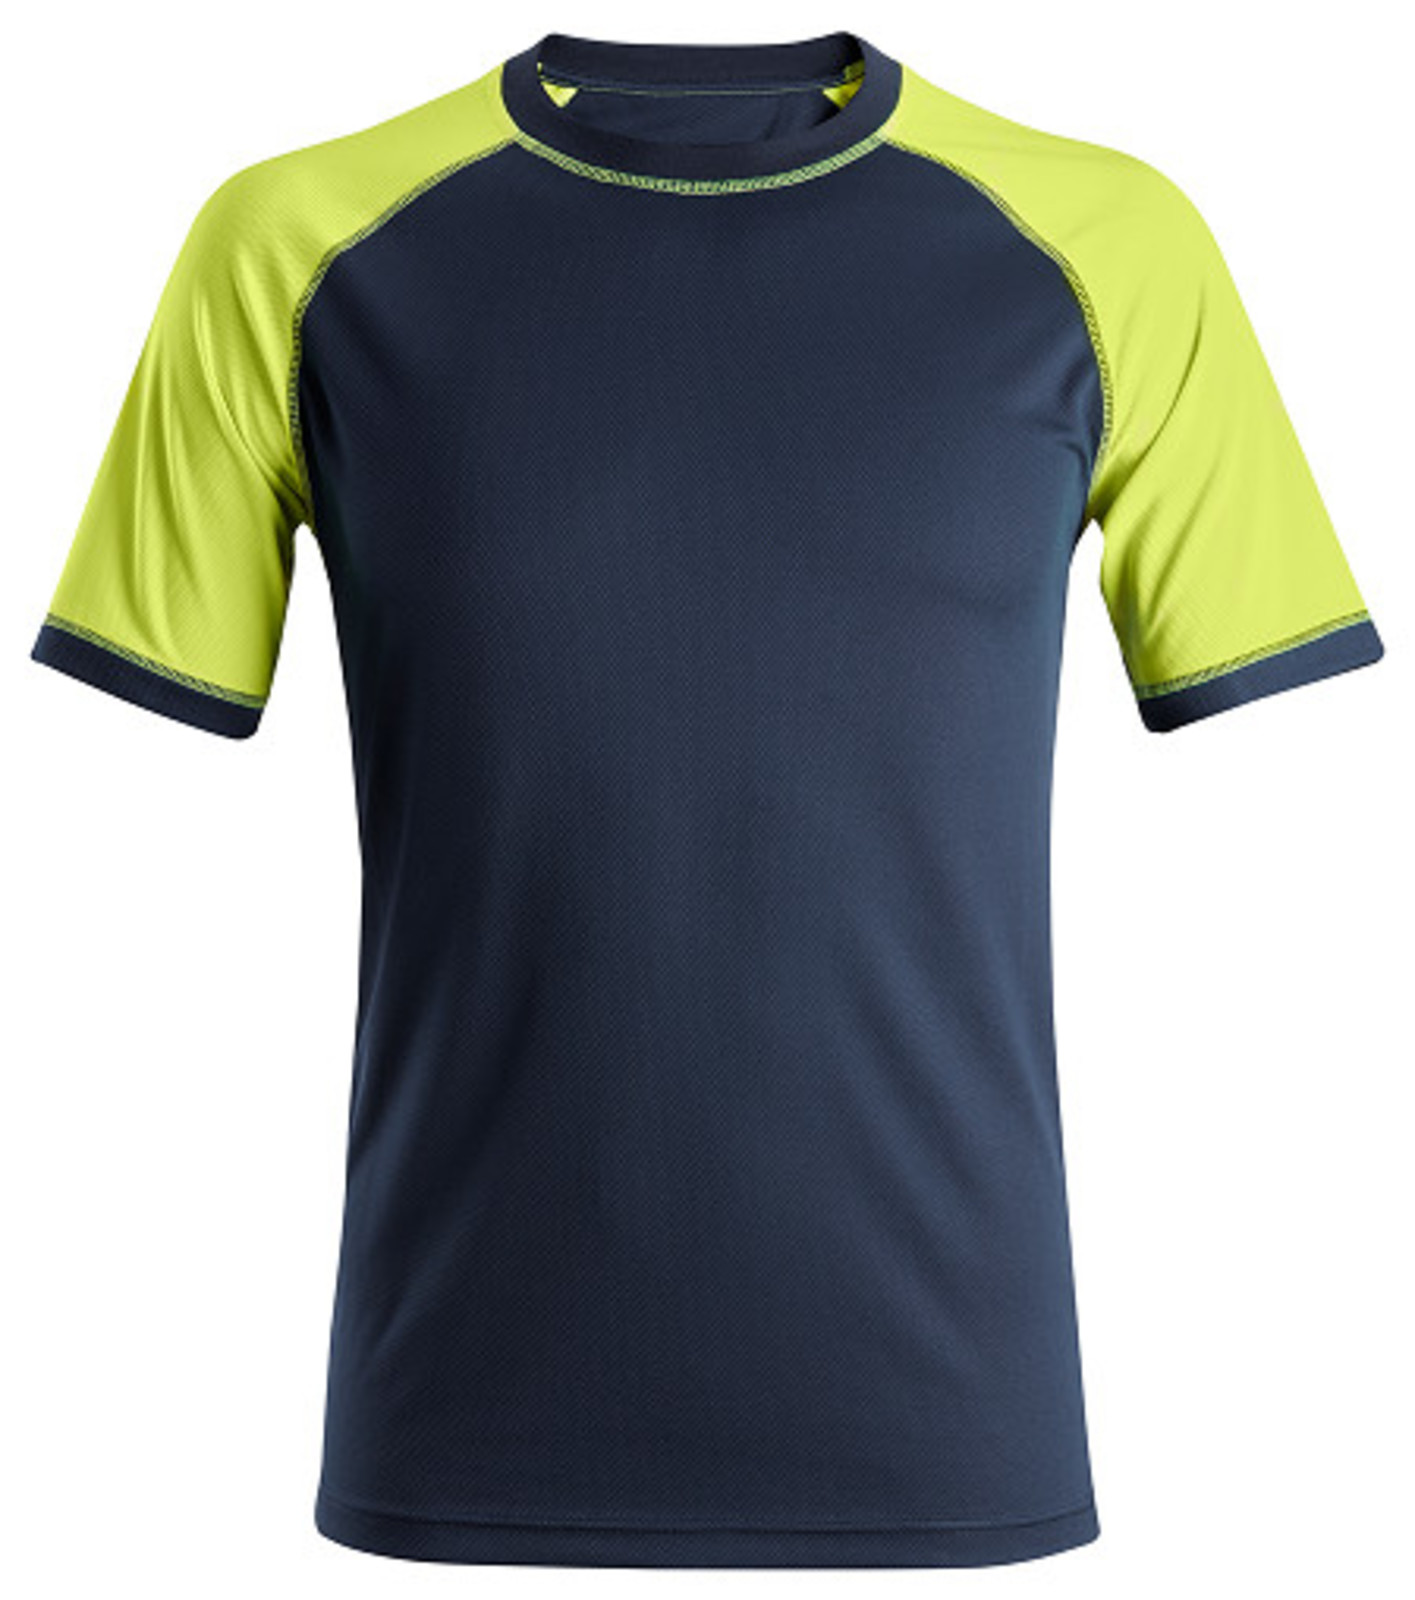 Pracovné tričko Snickers® Neon s krátkym rukávom - veľkosť: 3XL, farba: navy/žltá